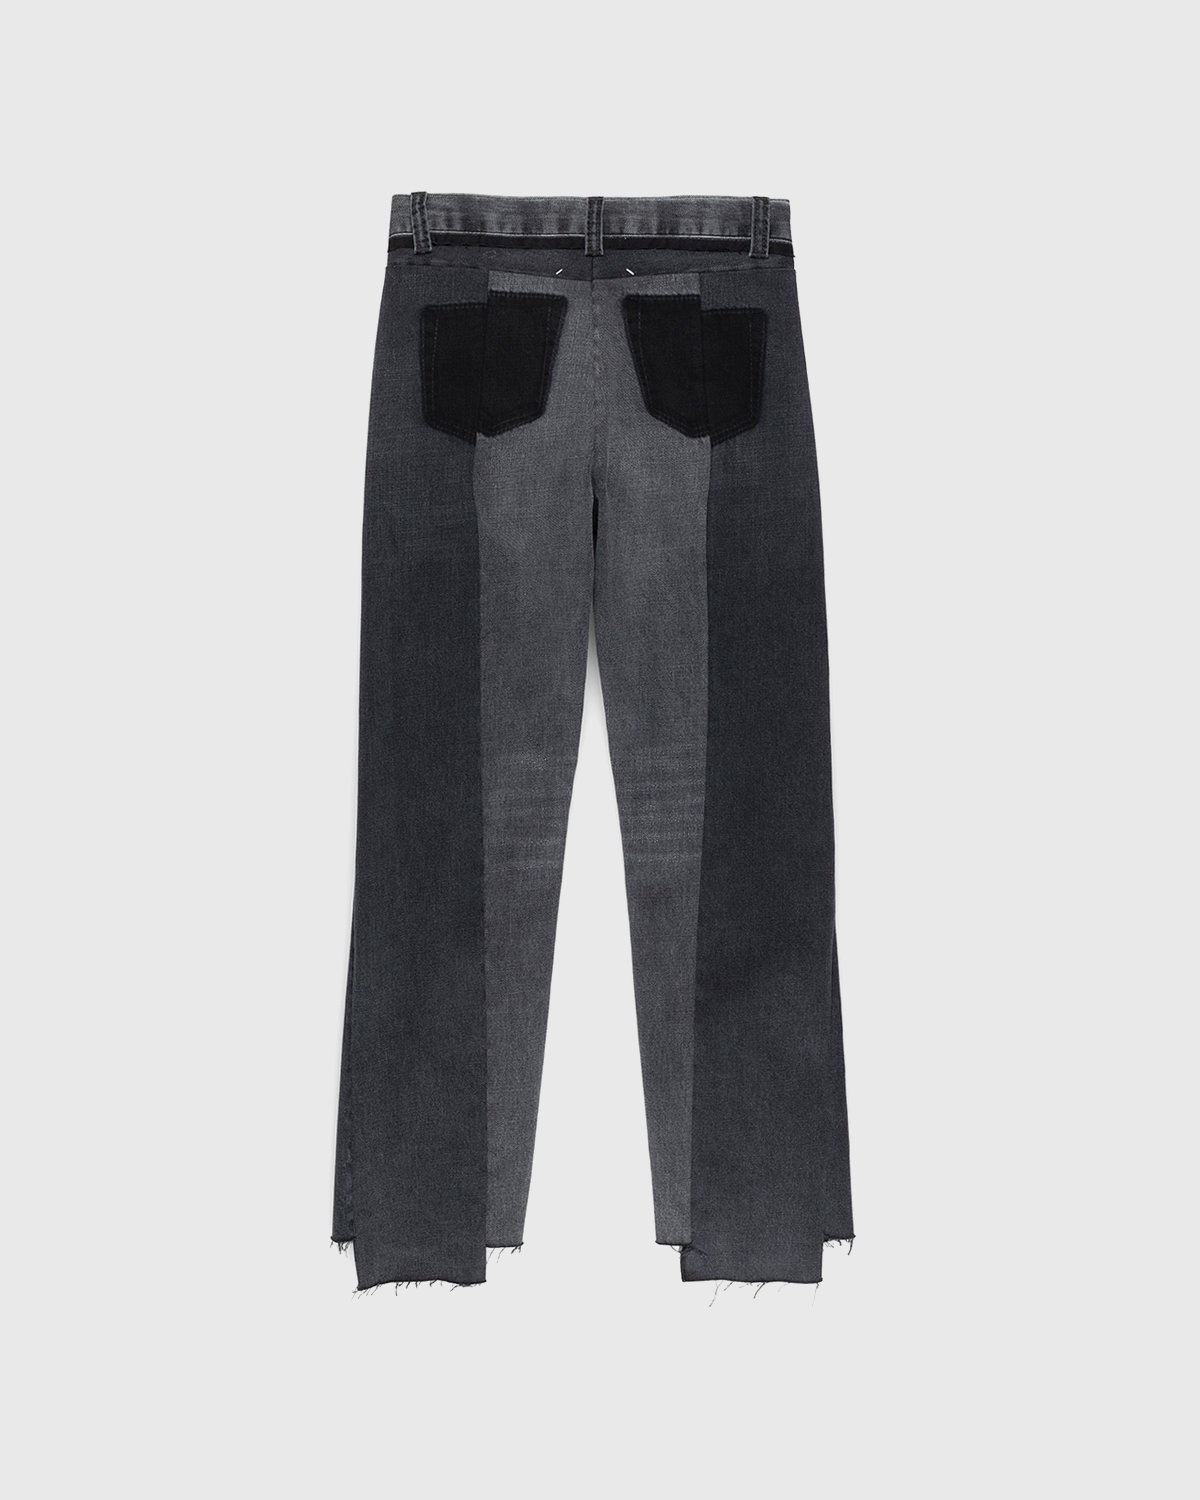 Maison Margiela – Spliced Jeans Black - Pants - Black - Image 2